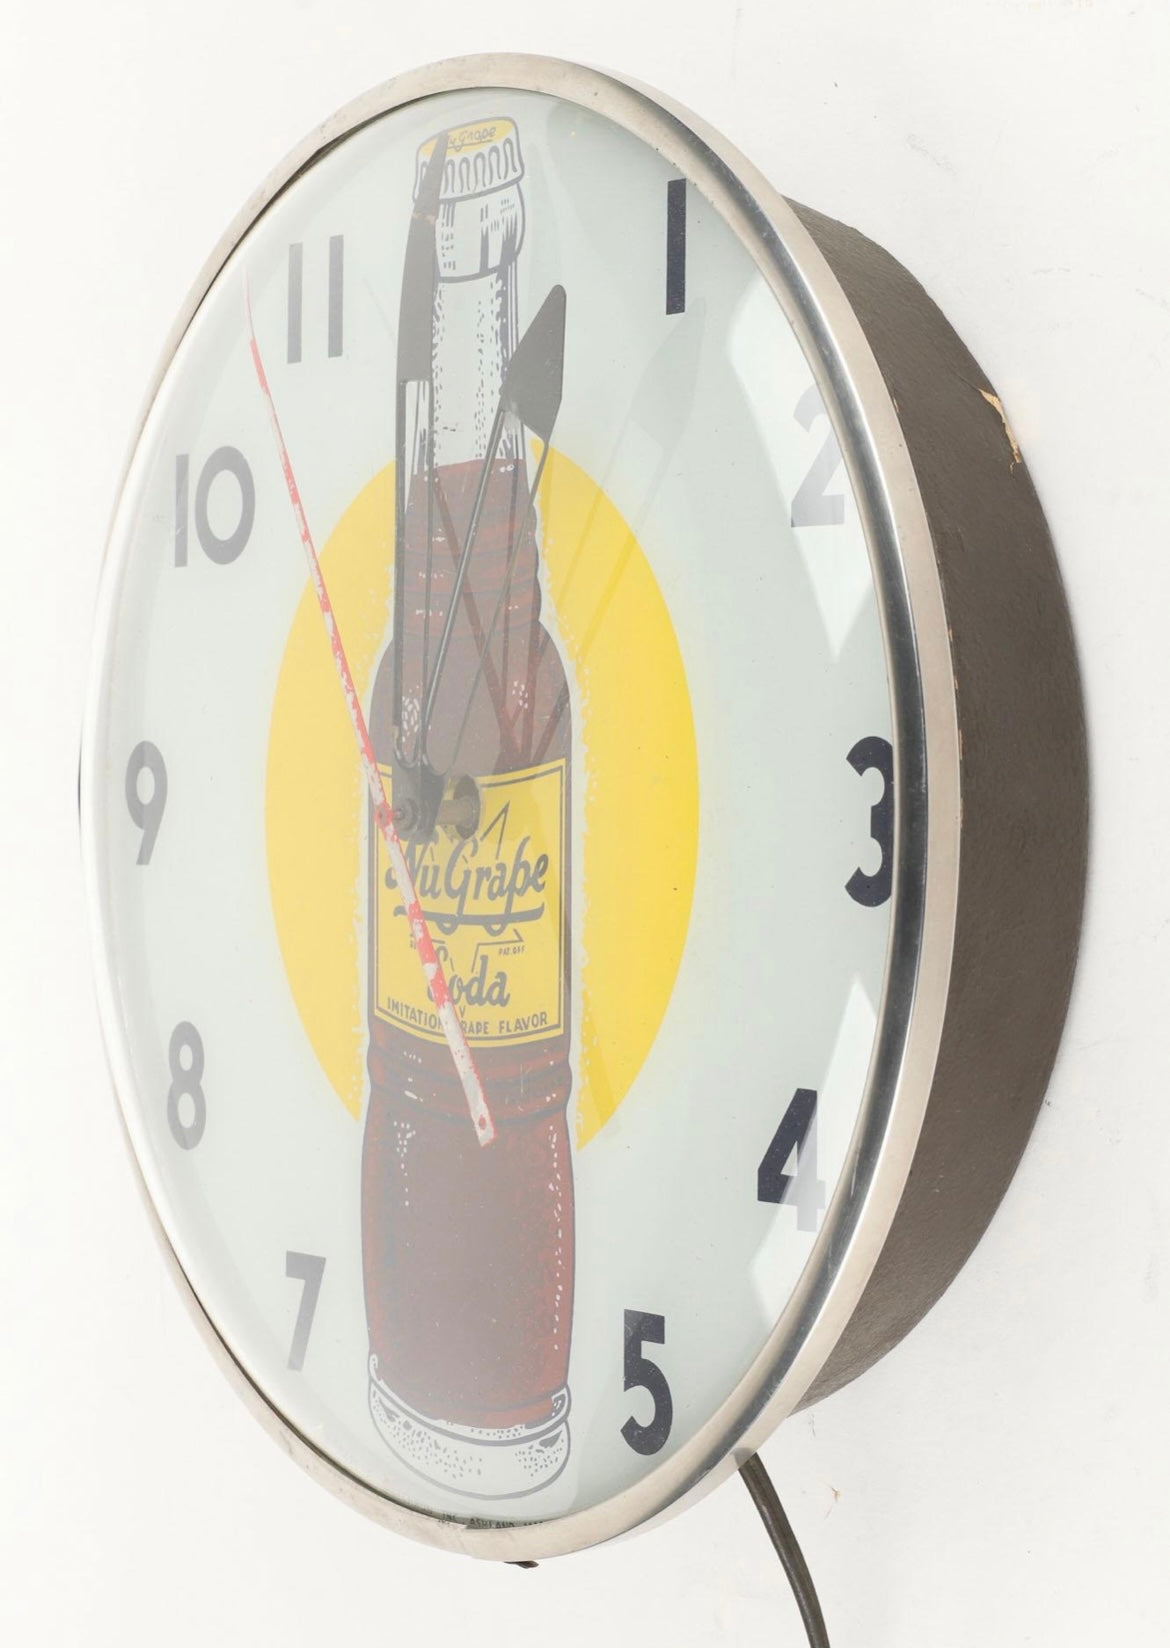 1950s Nugrape Soda Lighted Clock